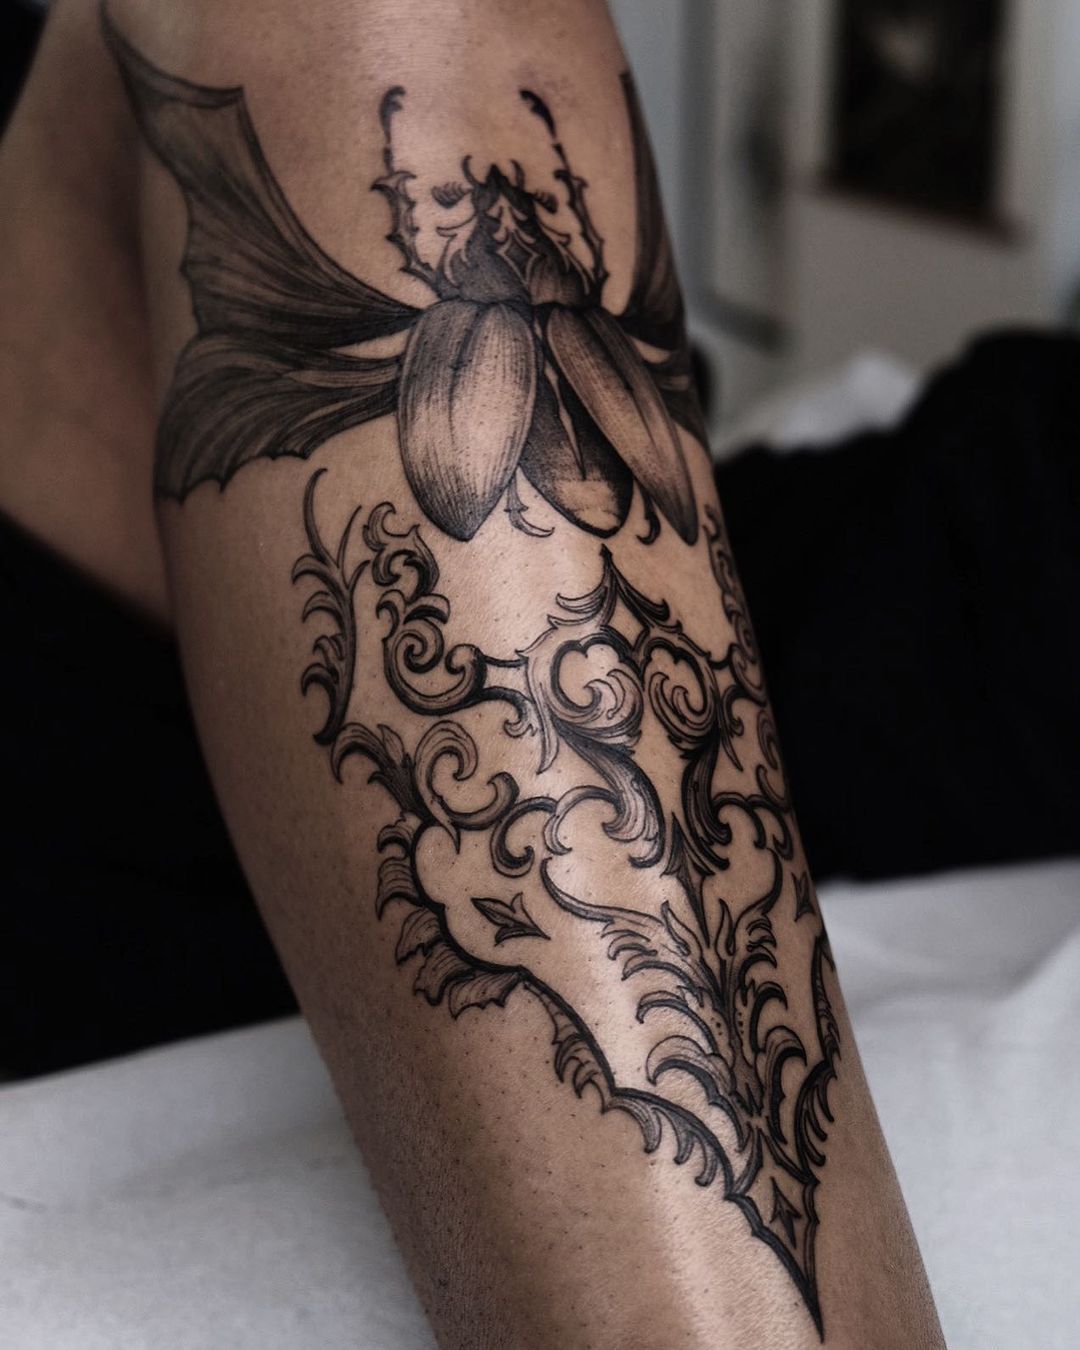 Beetle tattoos on leg by lyadiasharonhuughes